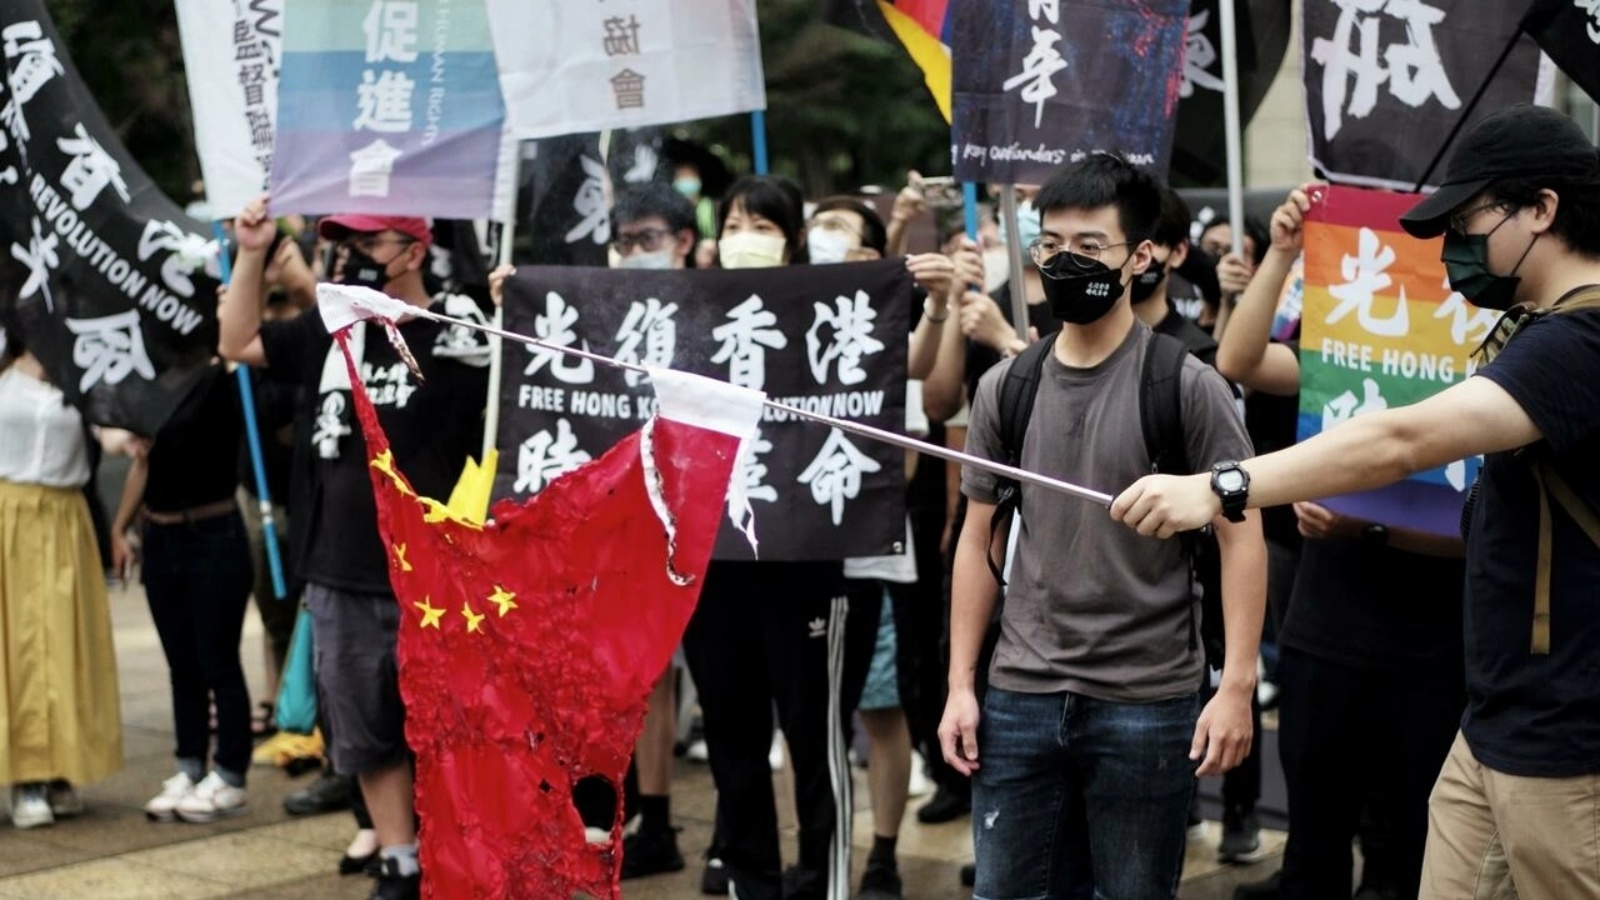 صورة مؤرخة في 12 يونيو 2022 لناشطين في تايبيه يحرقون علما صينيا خلال تجمع لإحياء الذكرى الثالثة لبدء الاحتجاجات الضخمة المؤيدة للديموقراطية في هونغ كونغ عام 2019